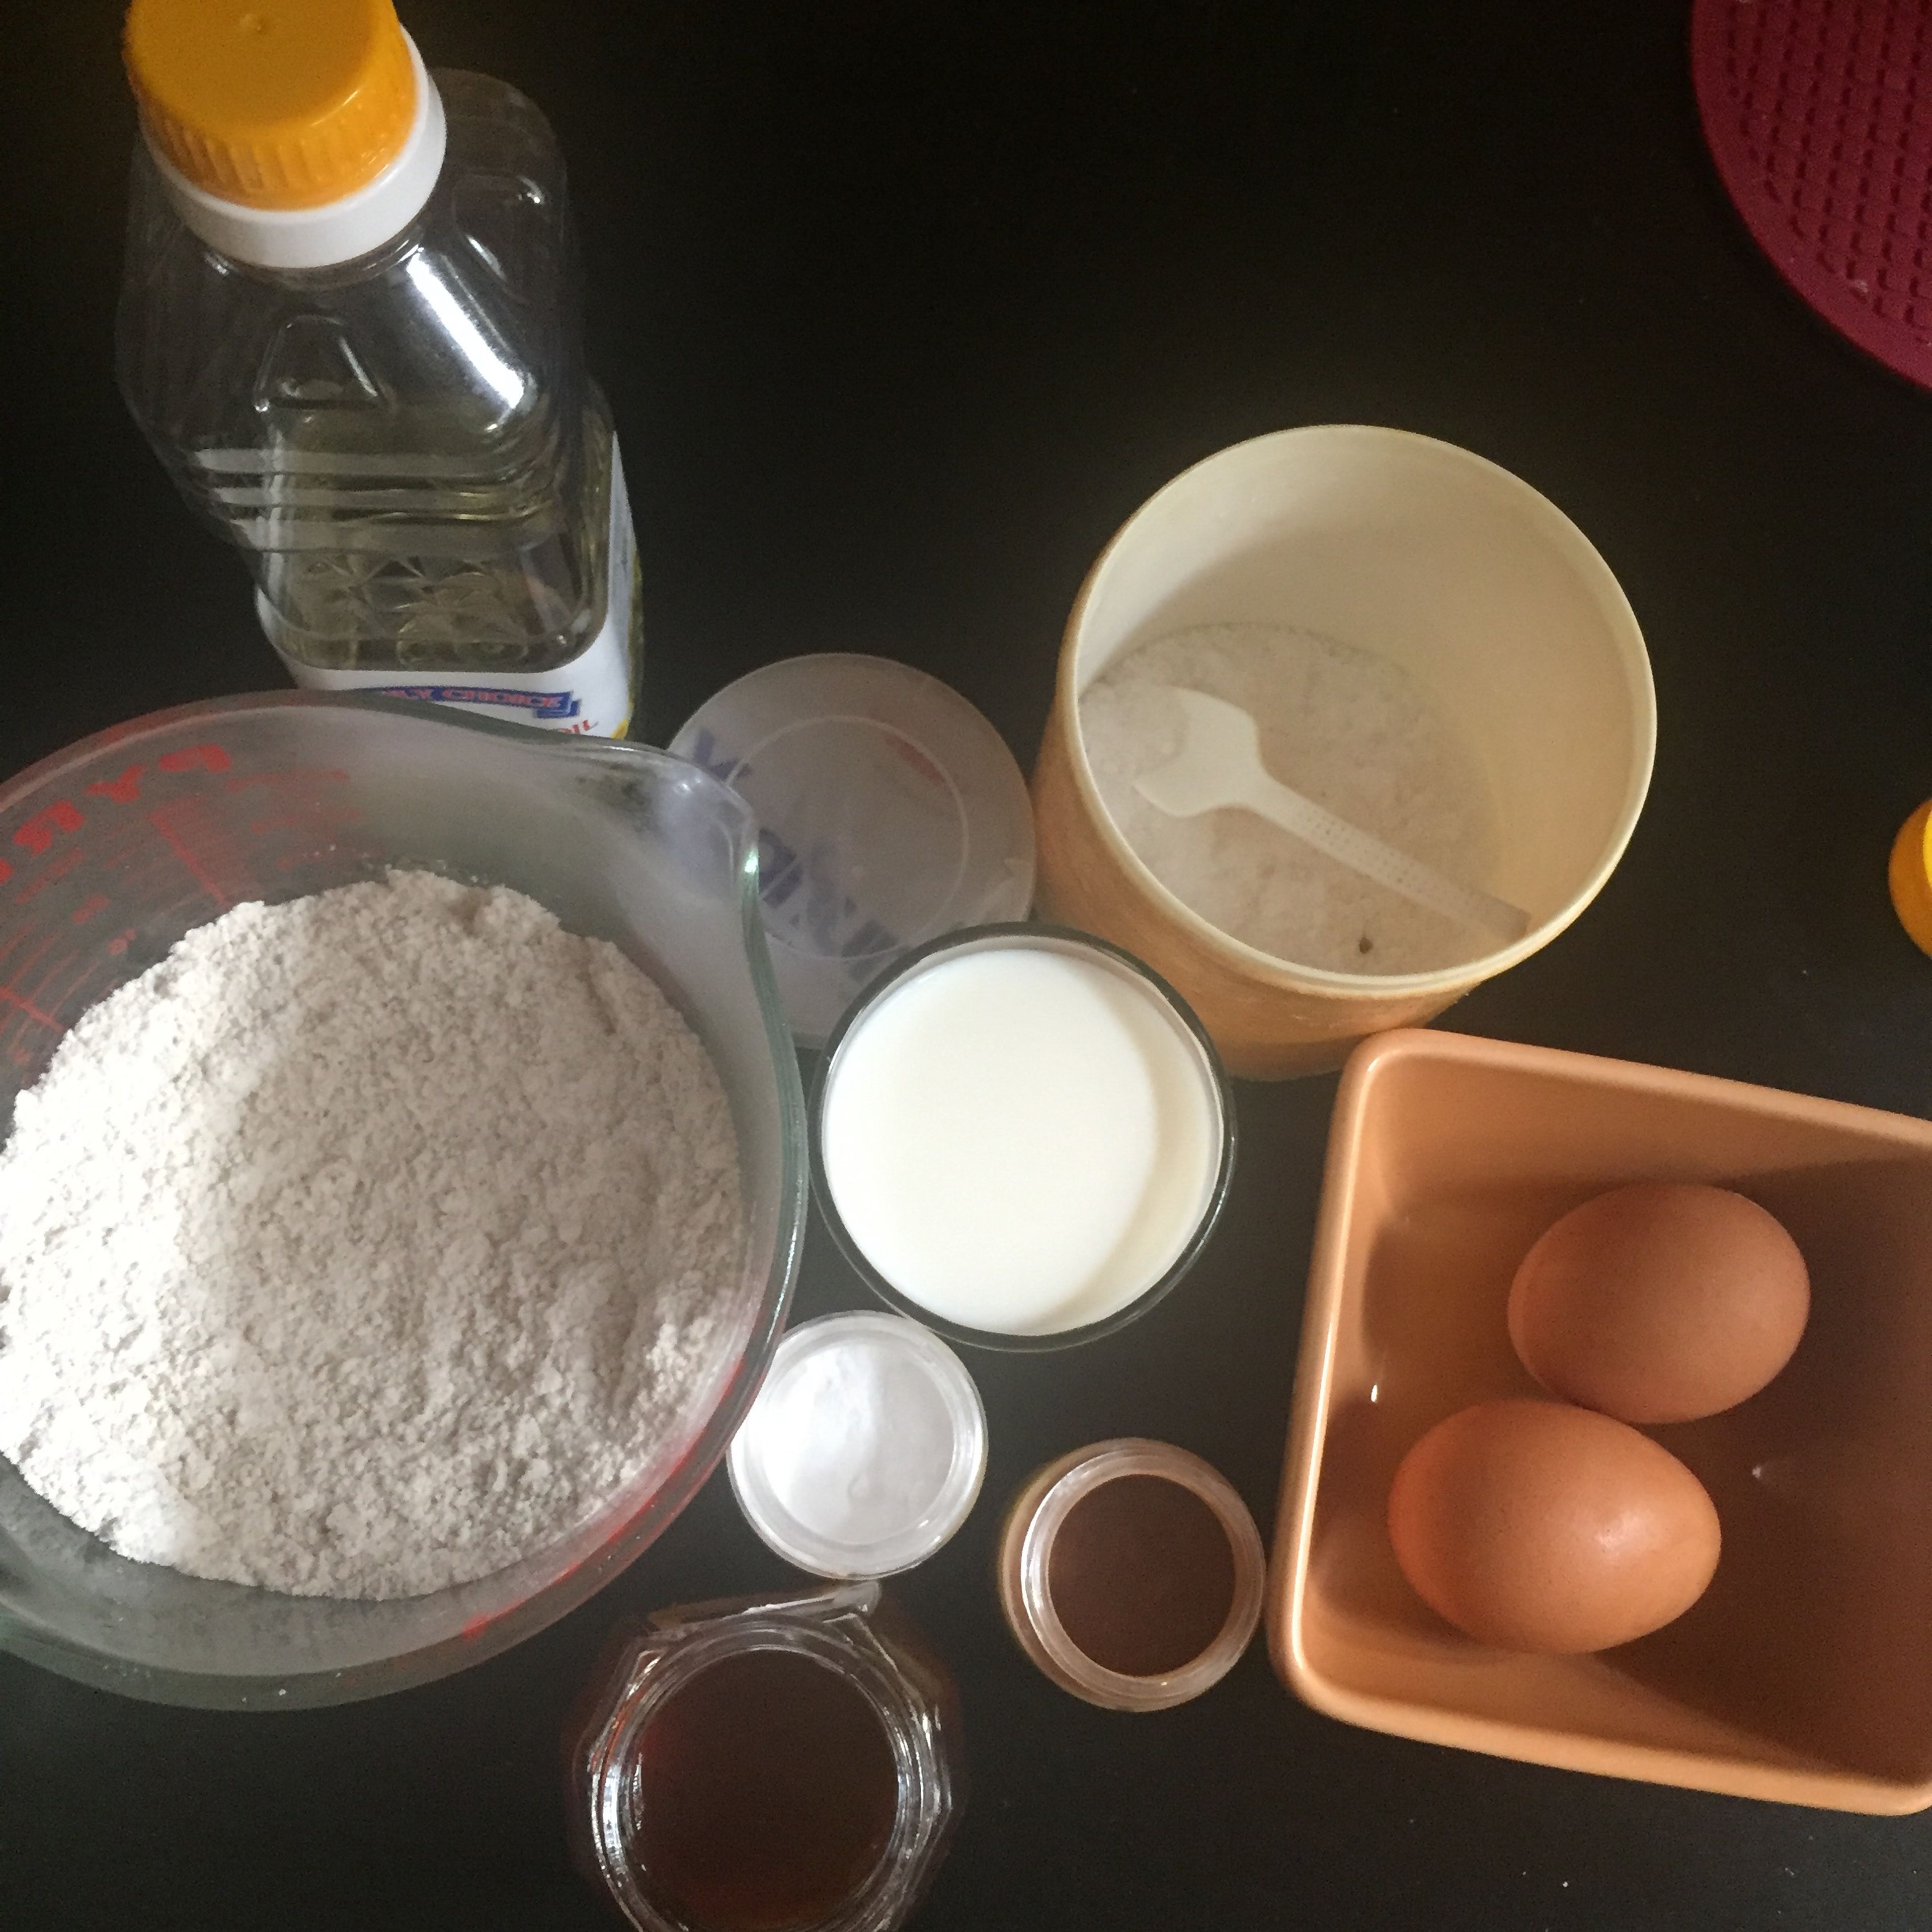 The ingredients gluten-free pancake